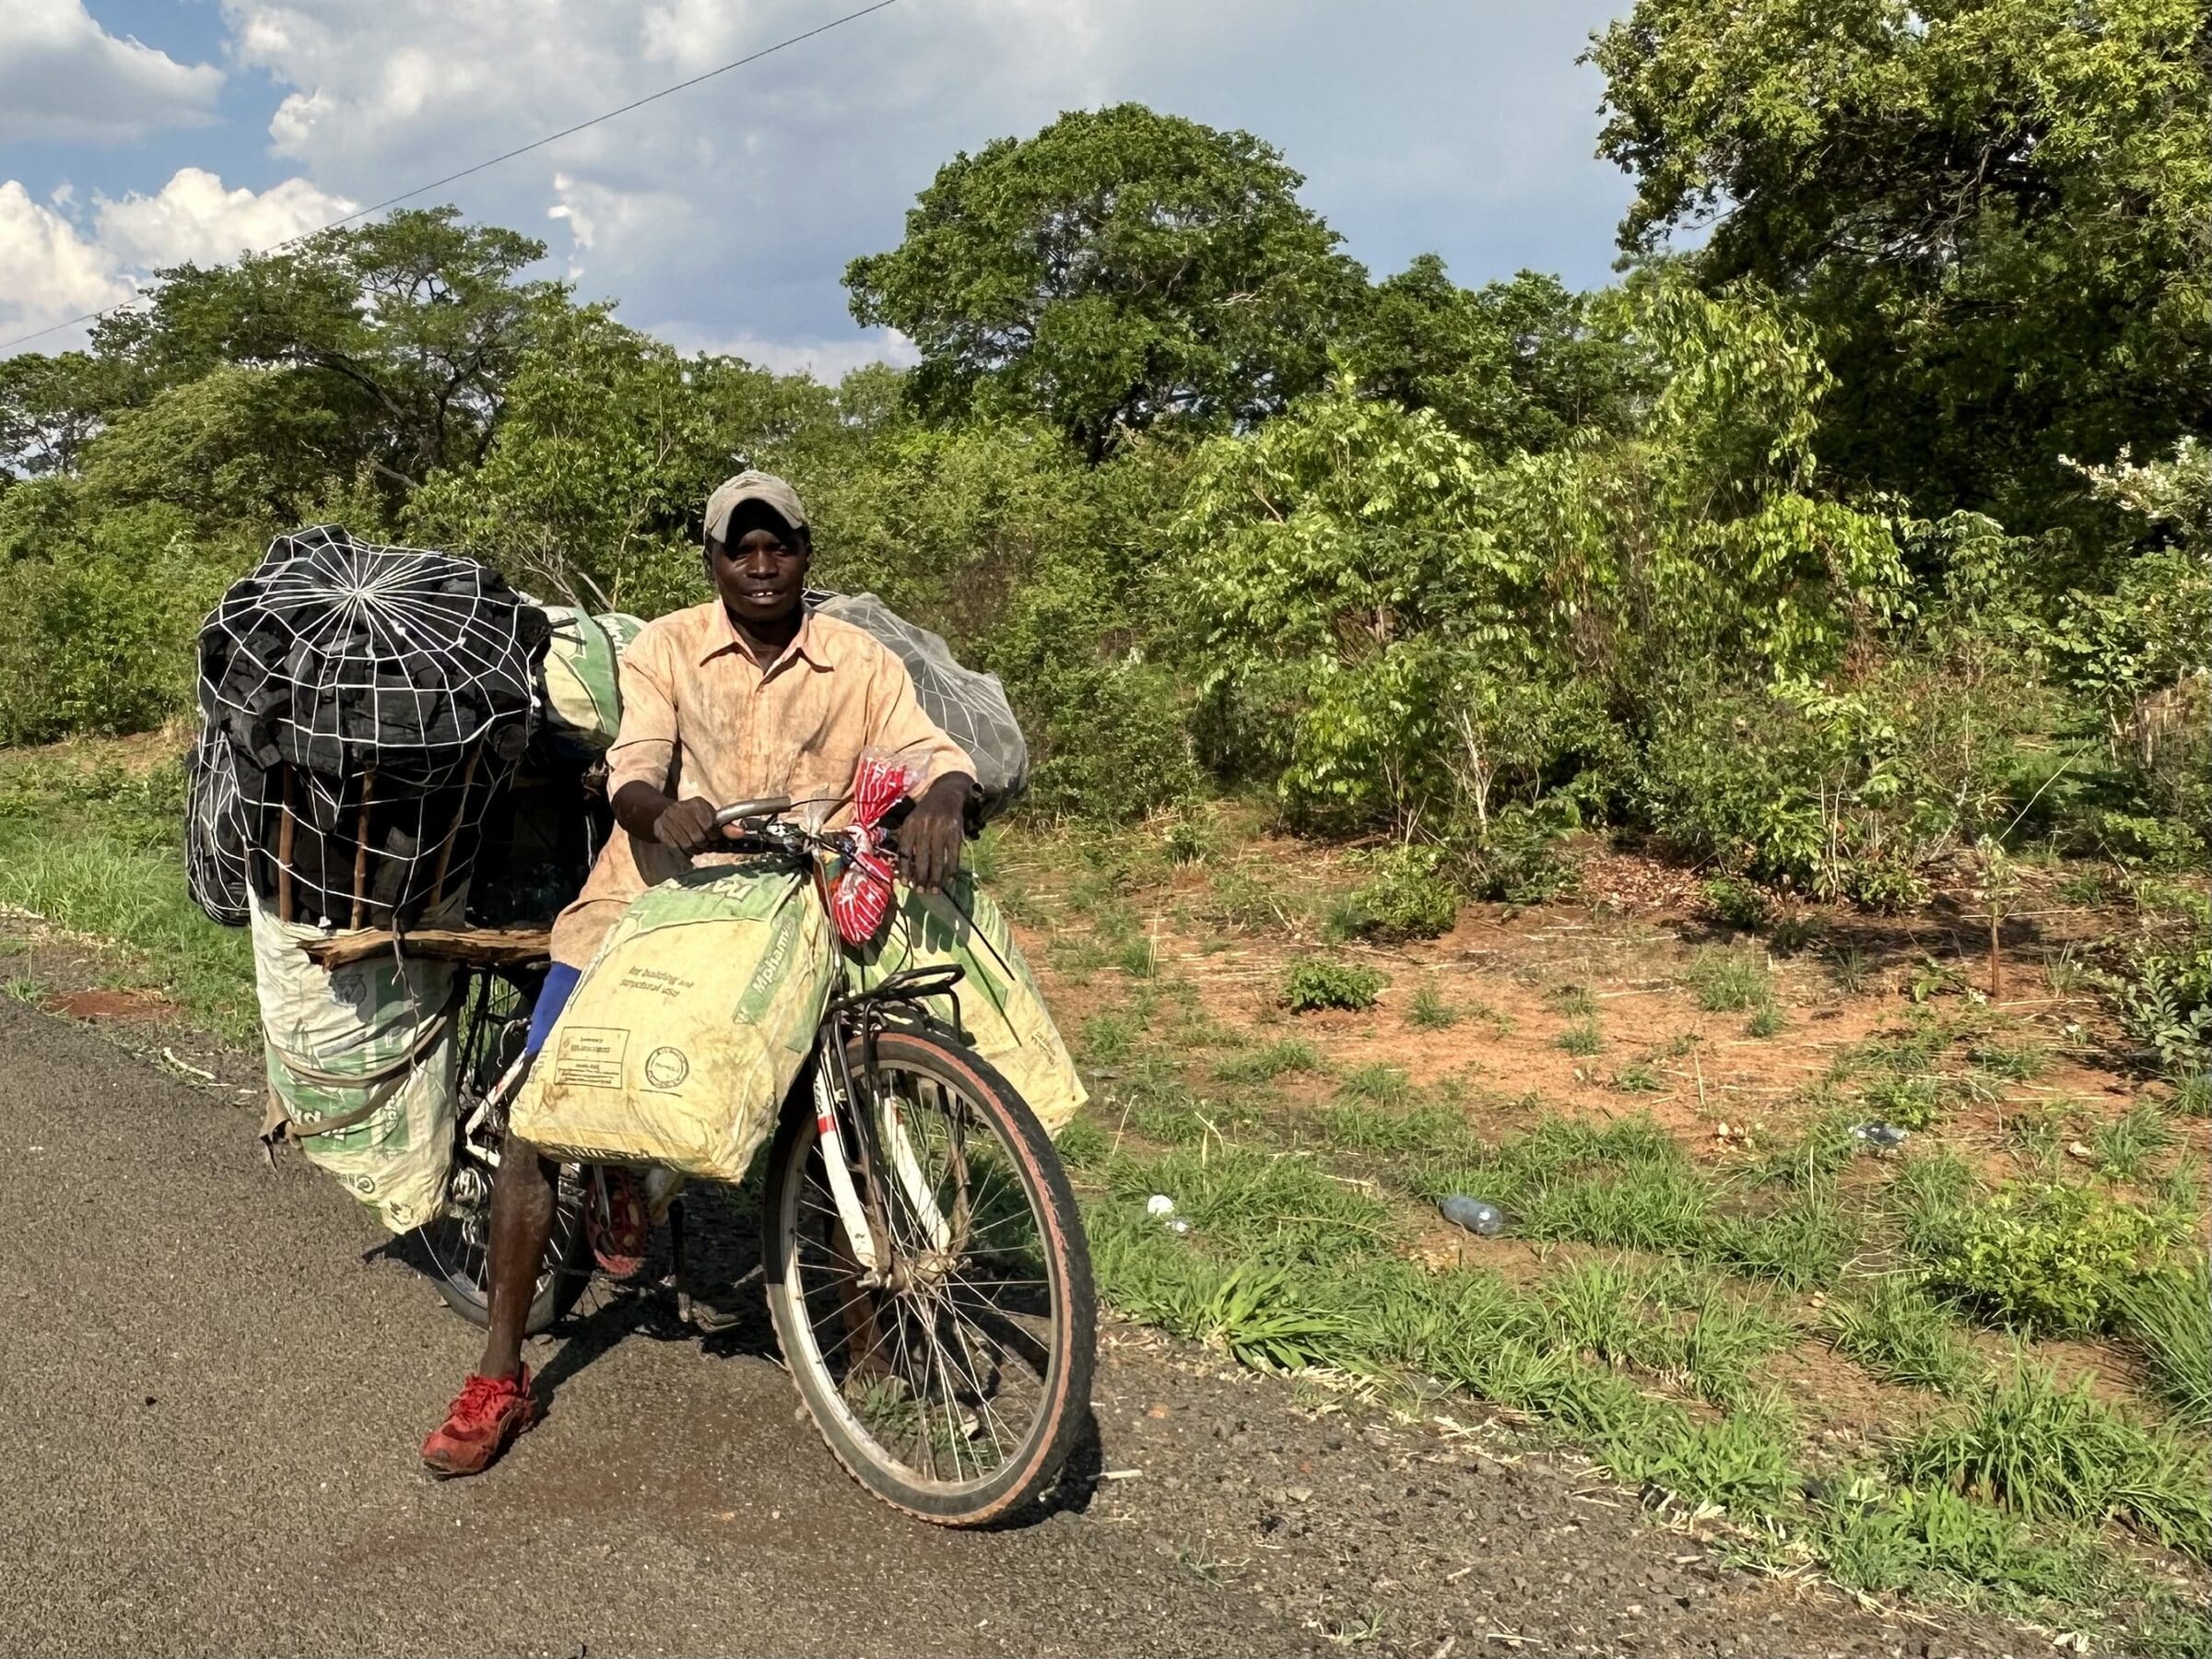 Cyklisten behöver vila | Överlandning i Zambia